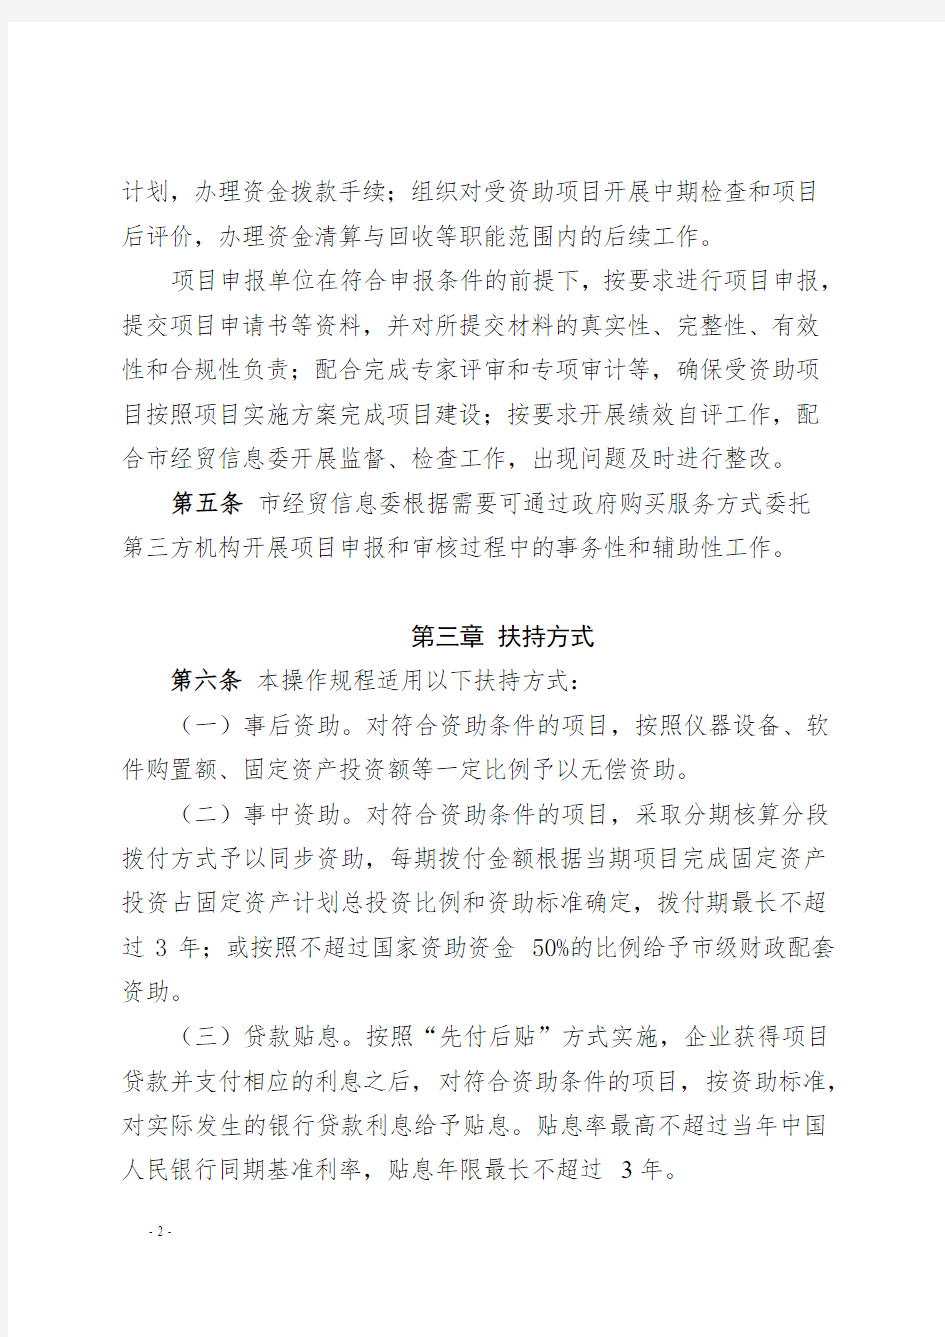 深圳担保集团知识产权融资贷款操作流程